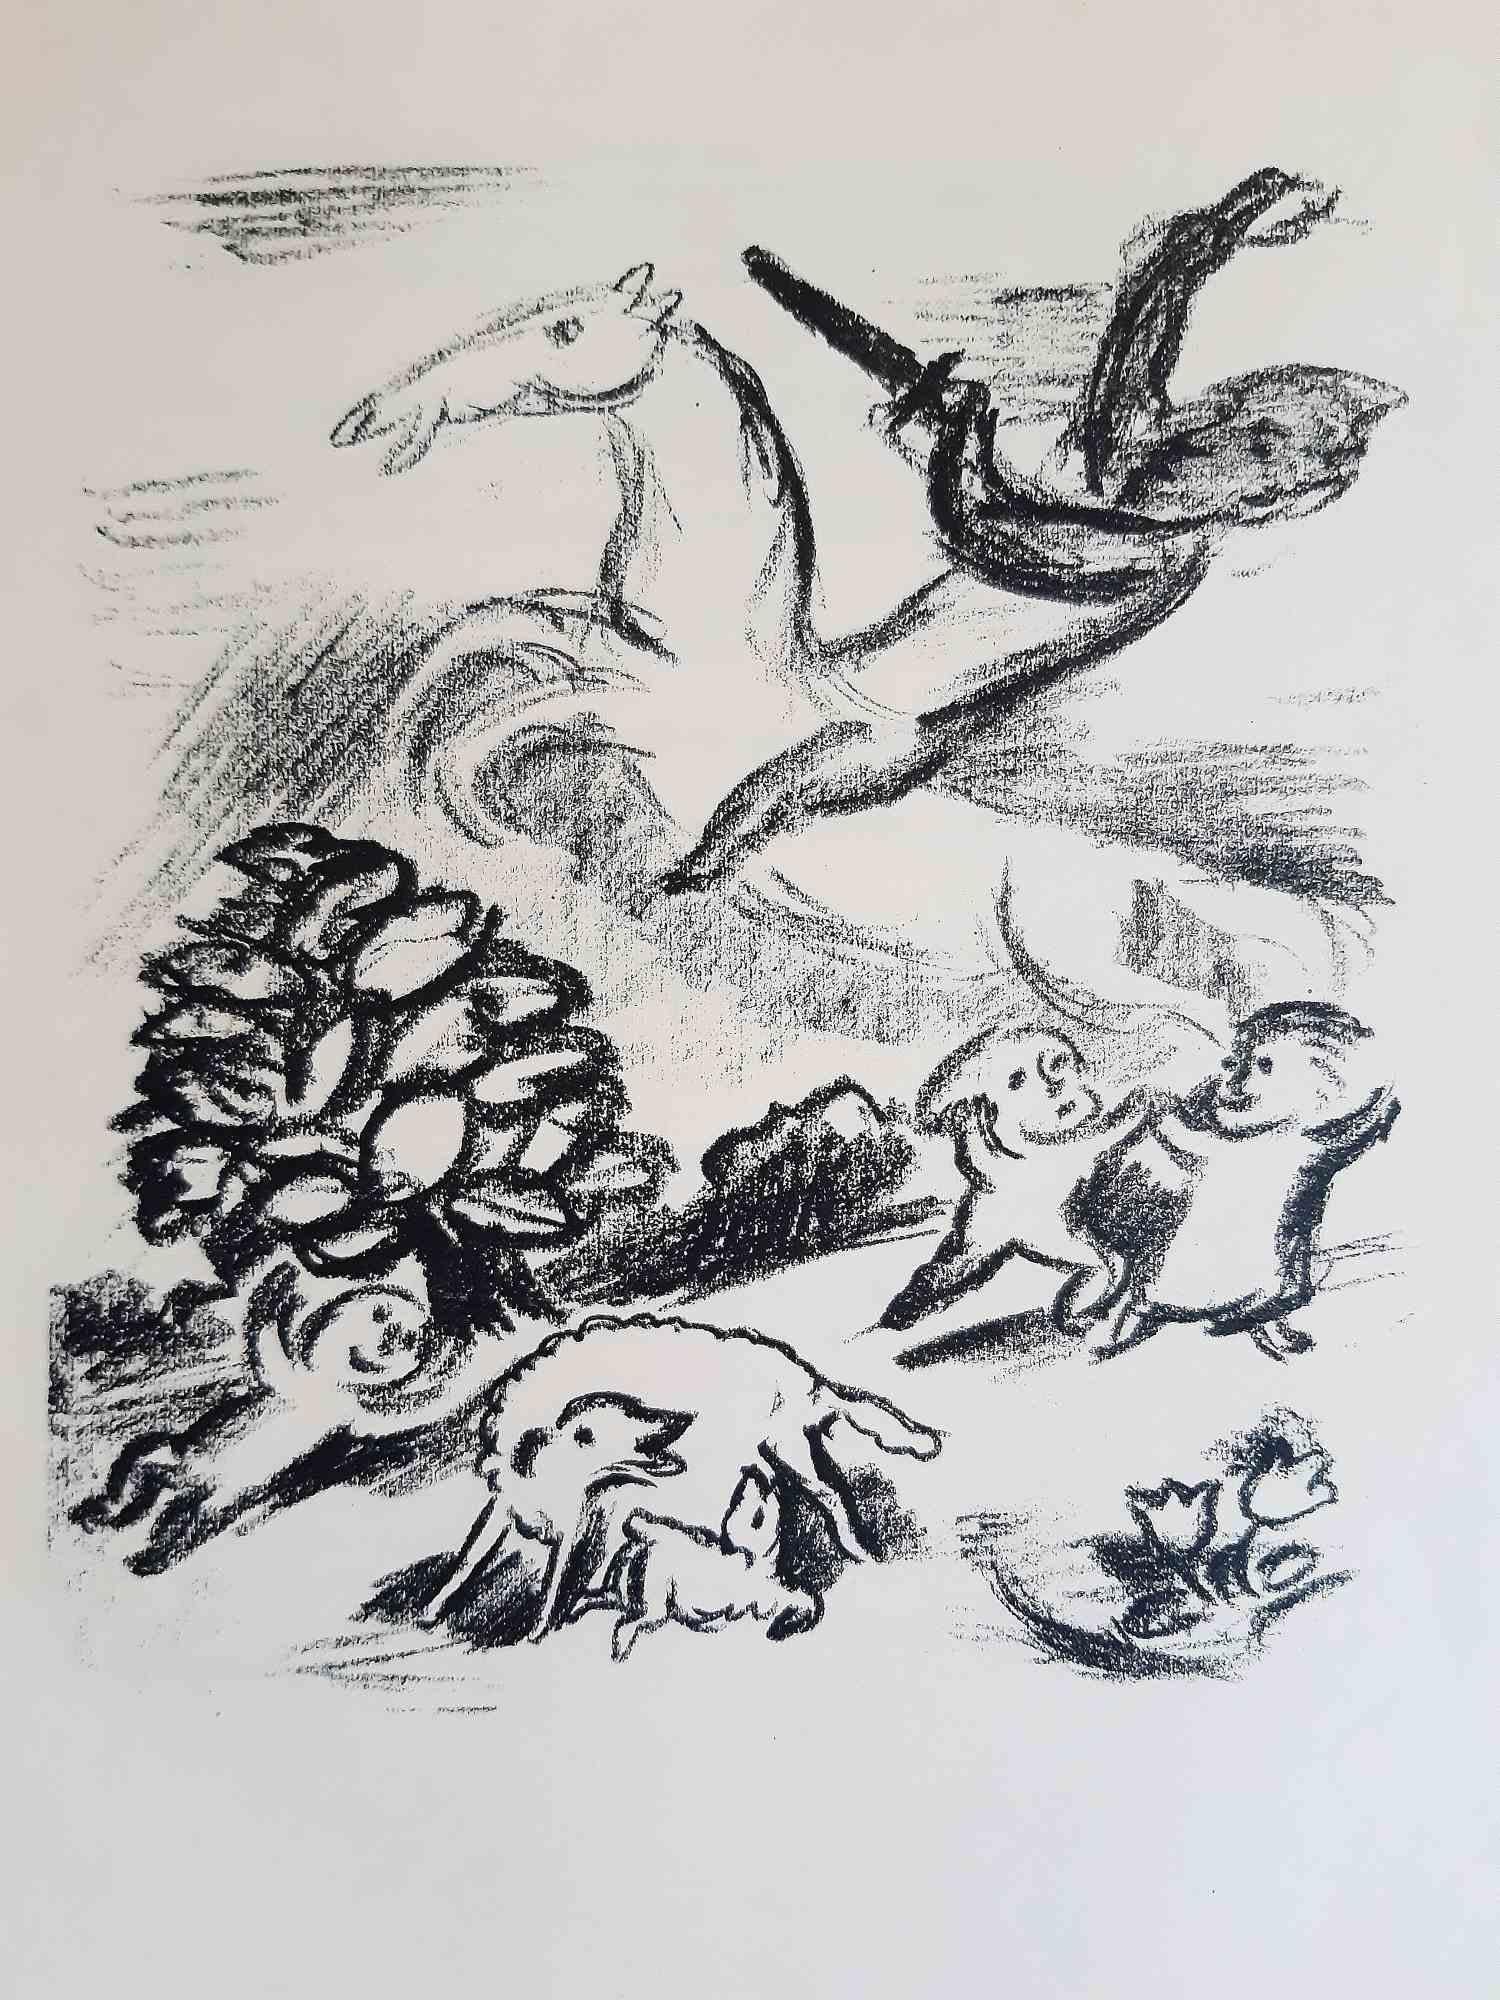 Die Lilienweisse Stute est un livre écrit par Carl Hauptmann (Obersalzbrunn, 1858 - Schreiberhau, 1921) et illustré par Otto Schubert (né le 29 janvier 1892 à Dresde - 12 juin 1970) en 1920.

Édition originale.

Publié par Rudolf Kaemmere,